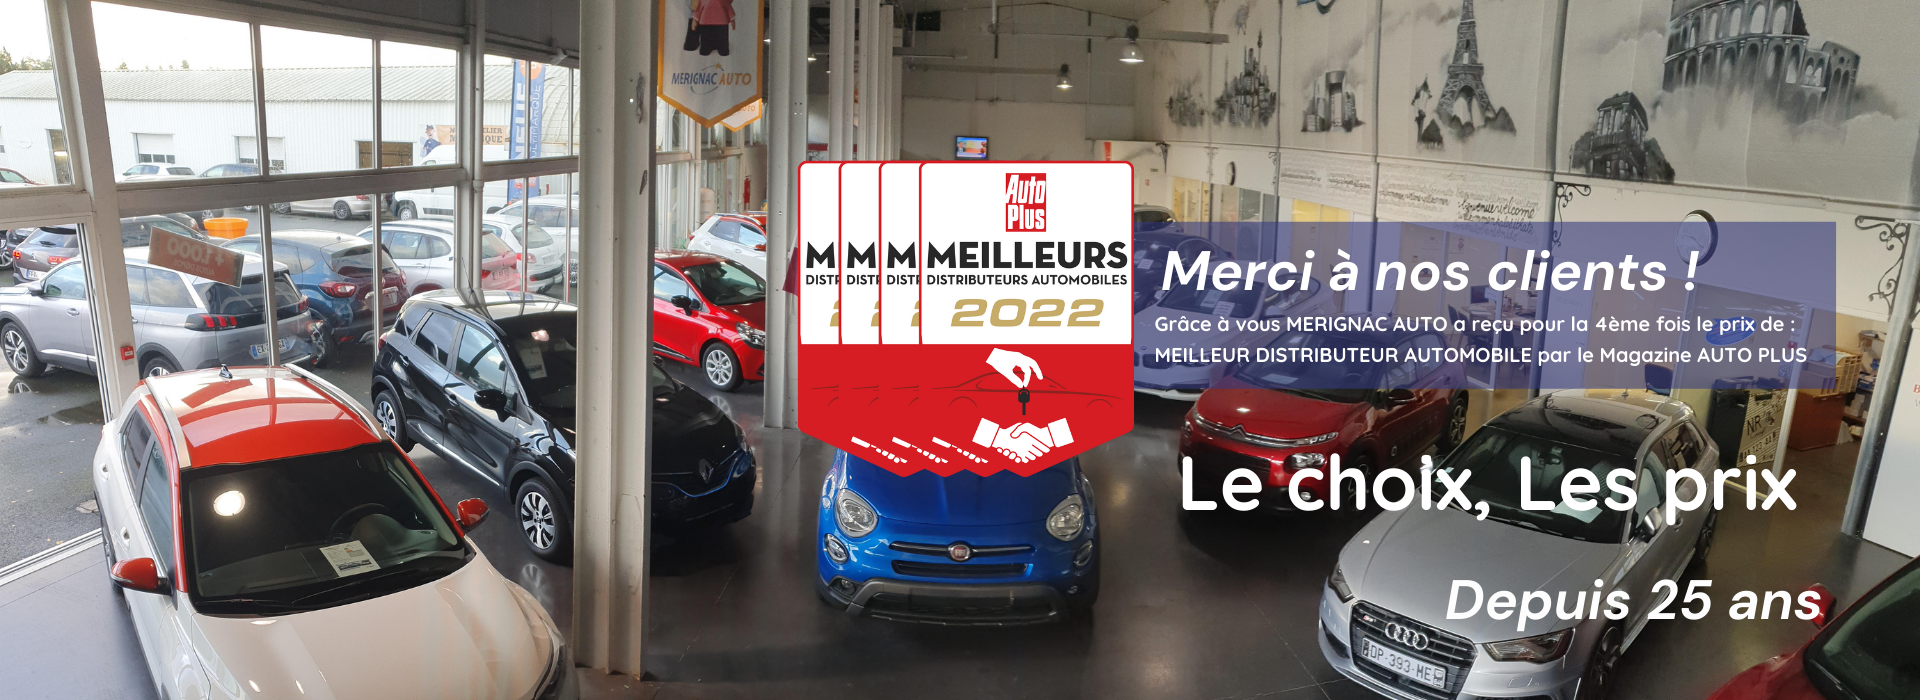 Slide 2 du site de Mérignac auto